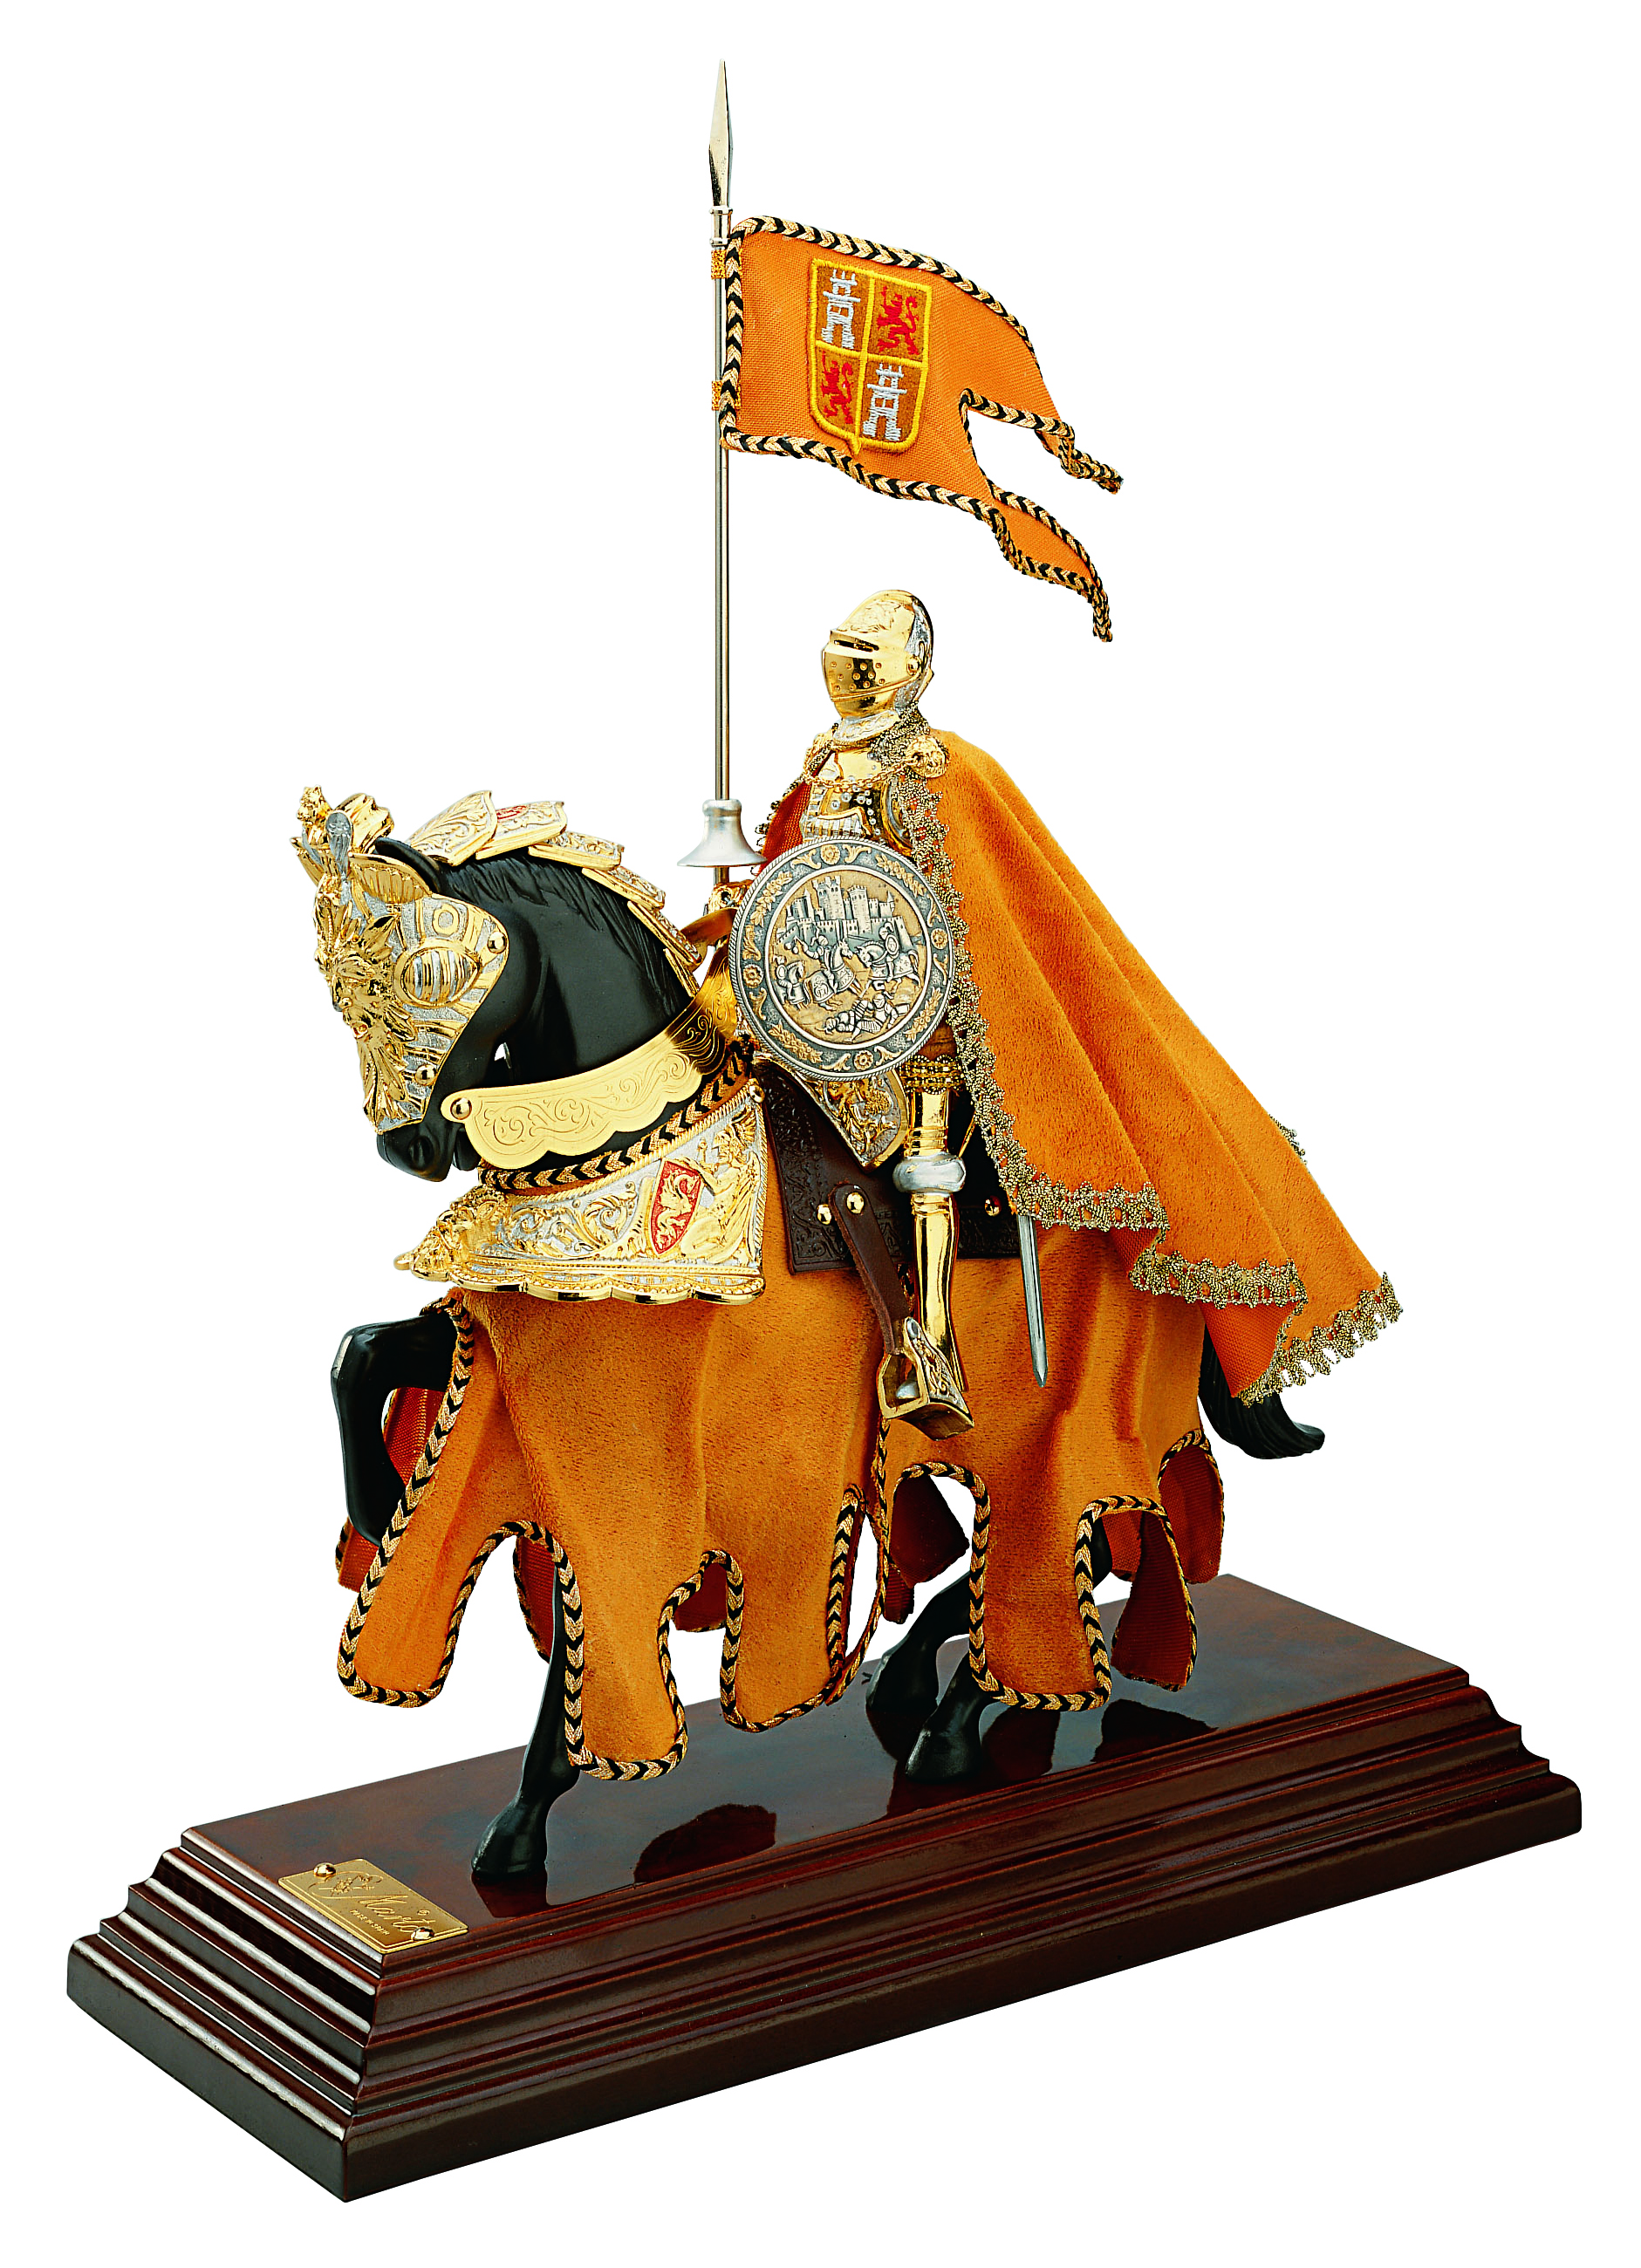 Miniatur Ritter El Cid auf Pferd